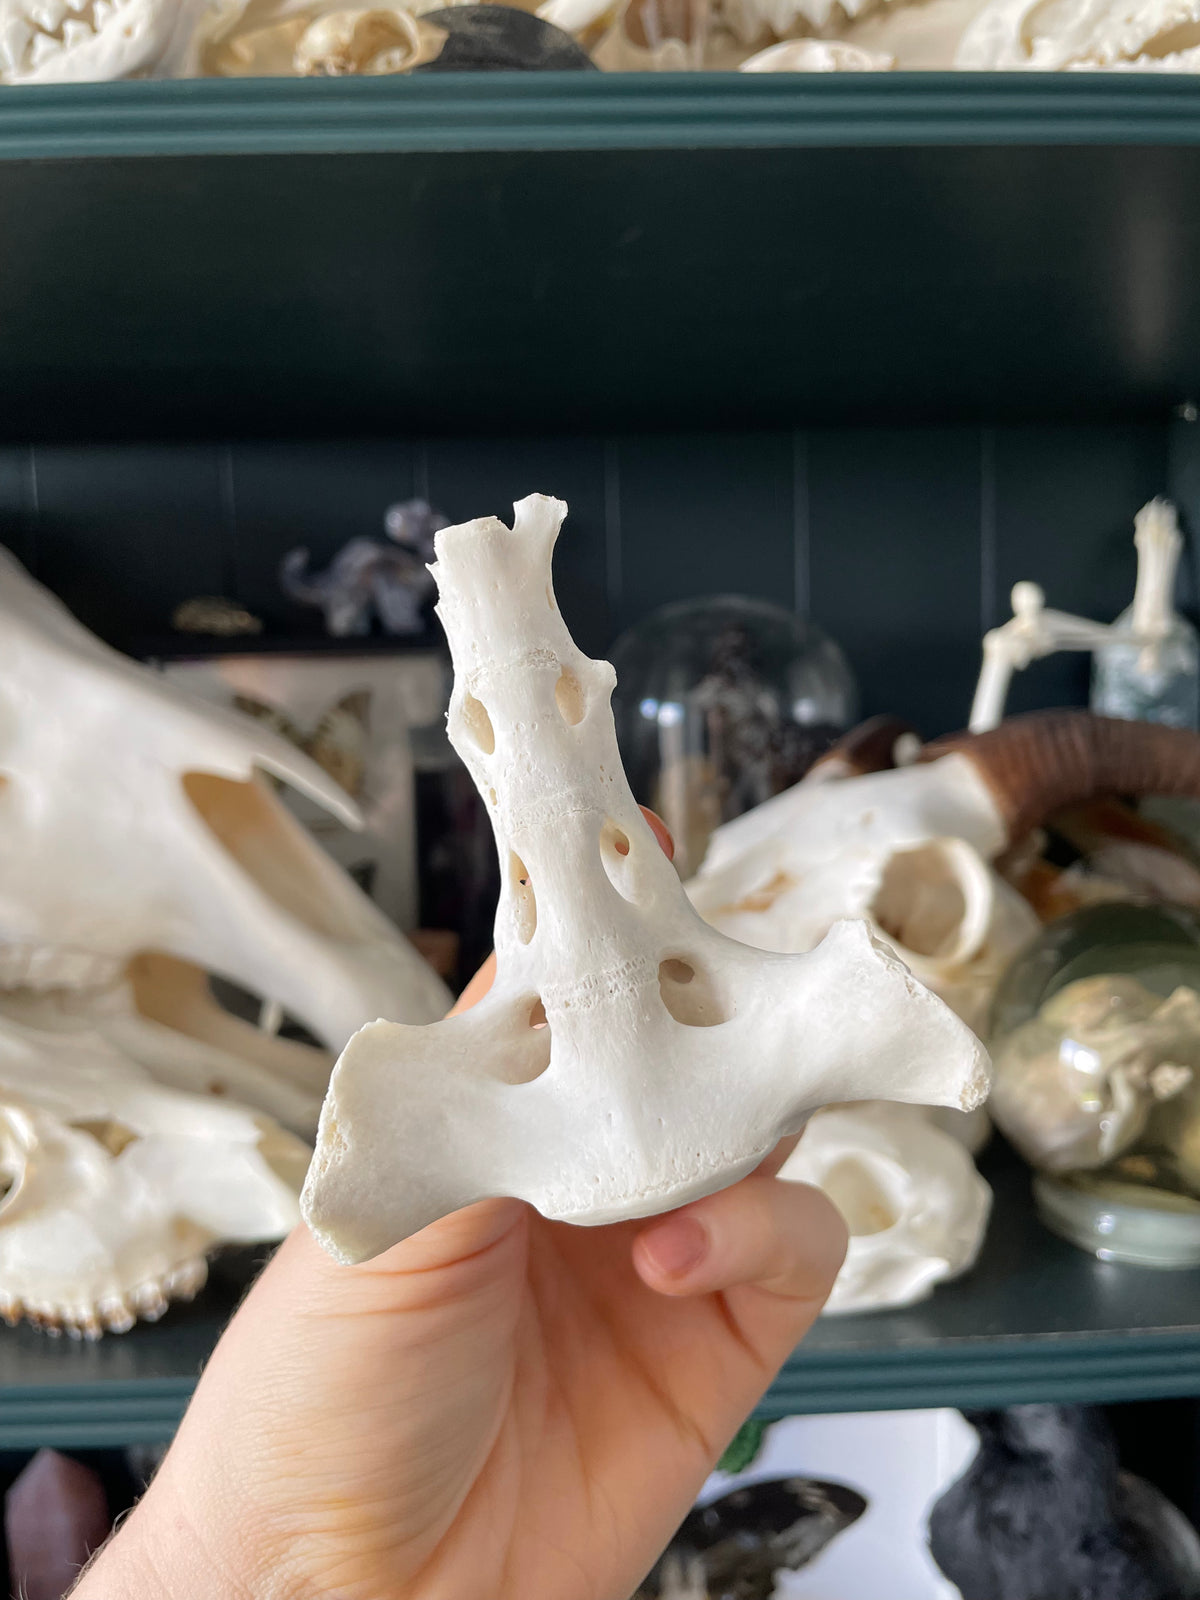 Goat Sacrum Bone